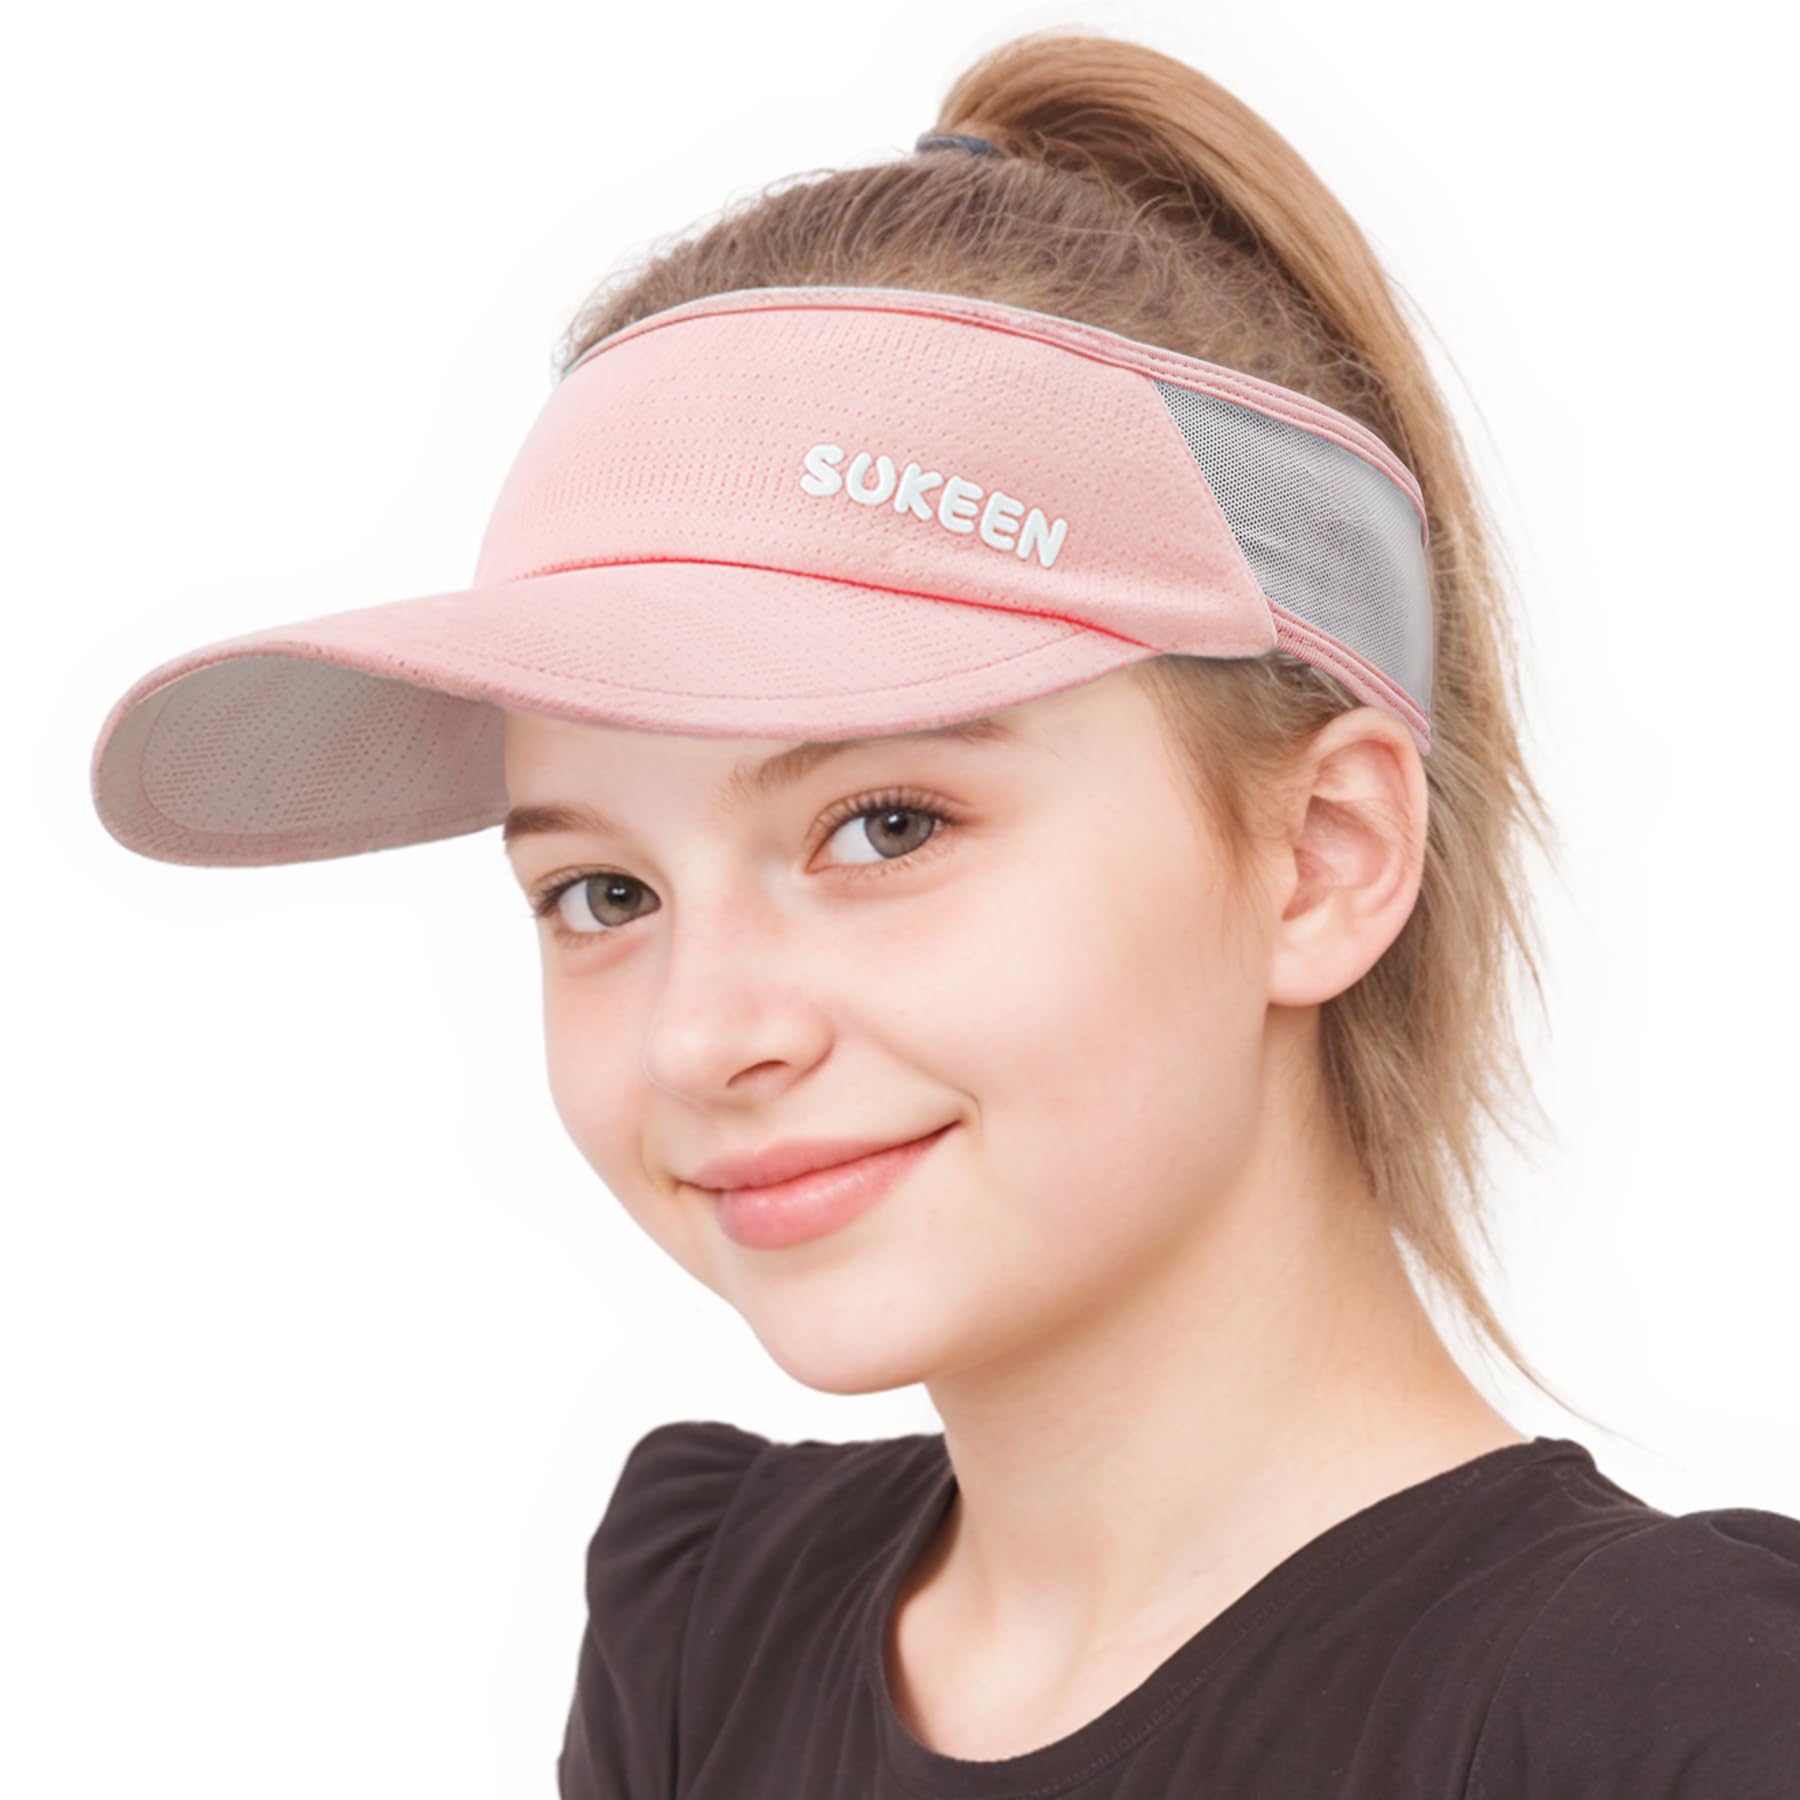 Sukeen Kids Sun Visor Hats for Girls Boys